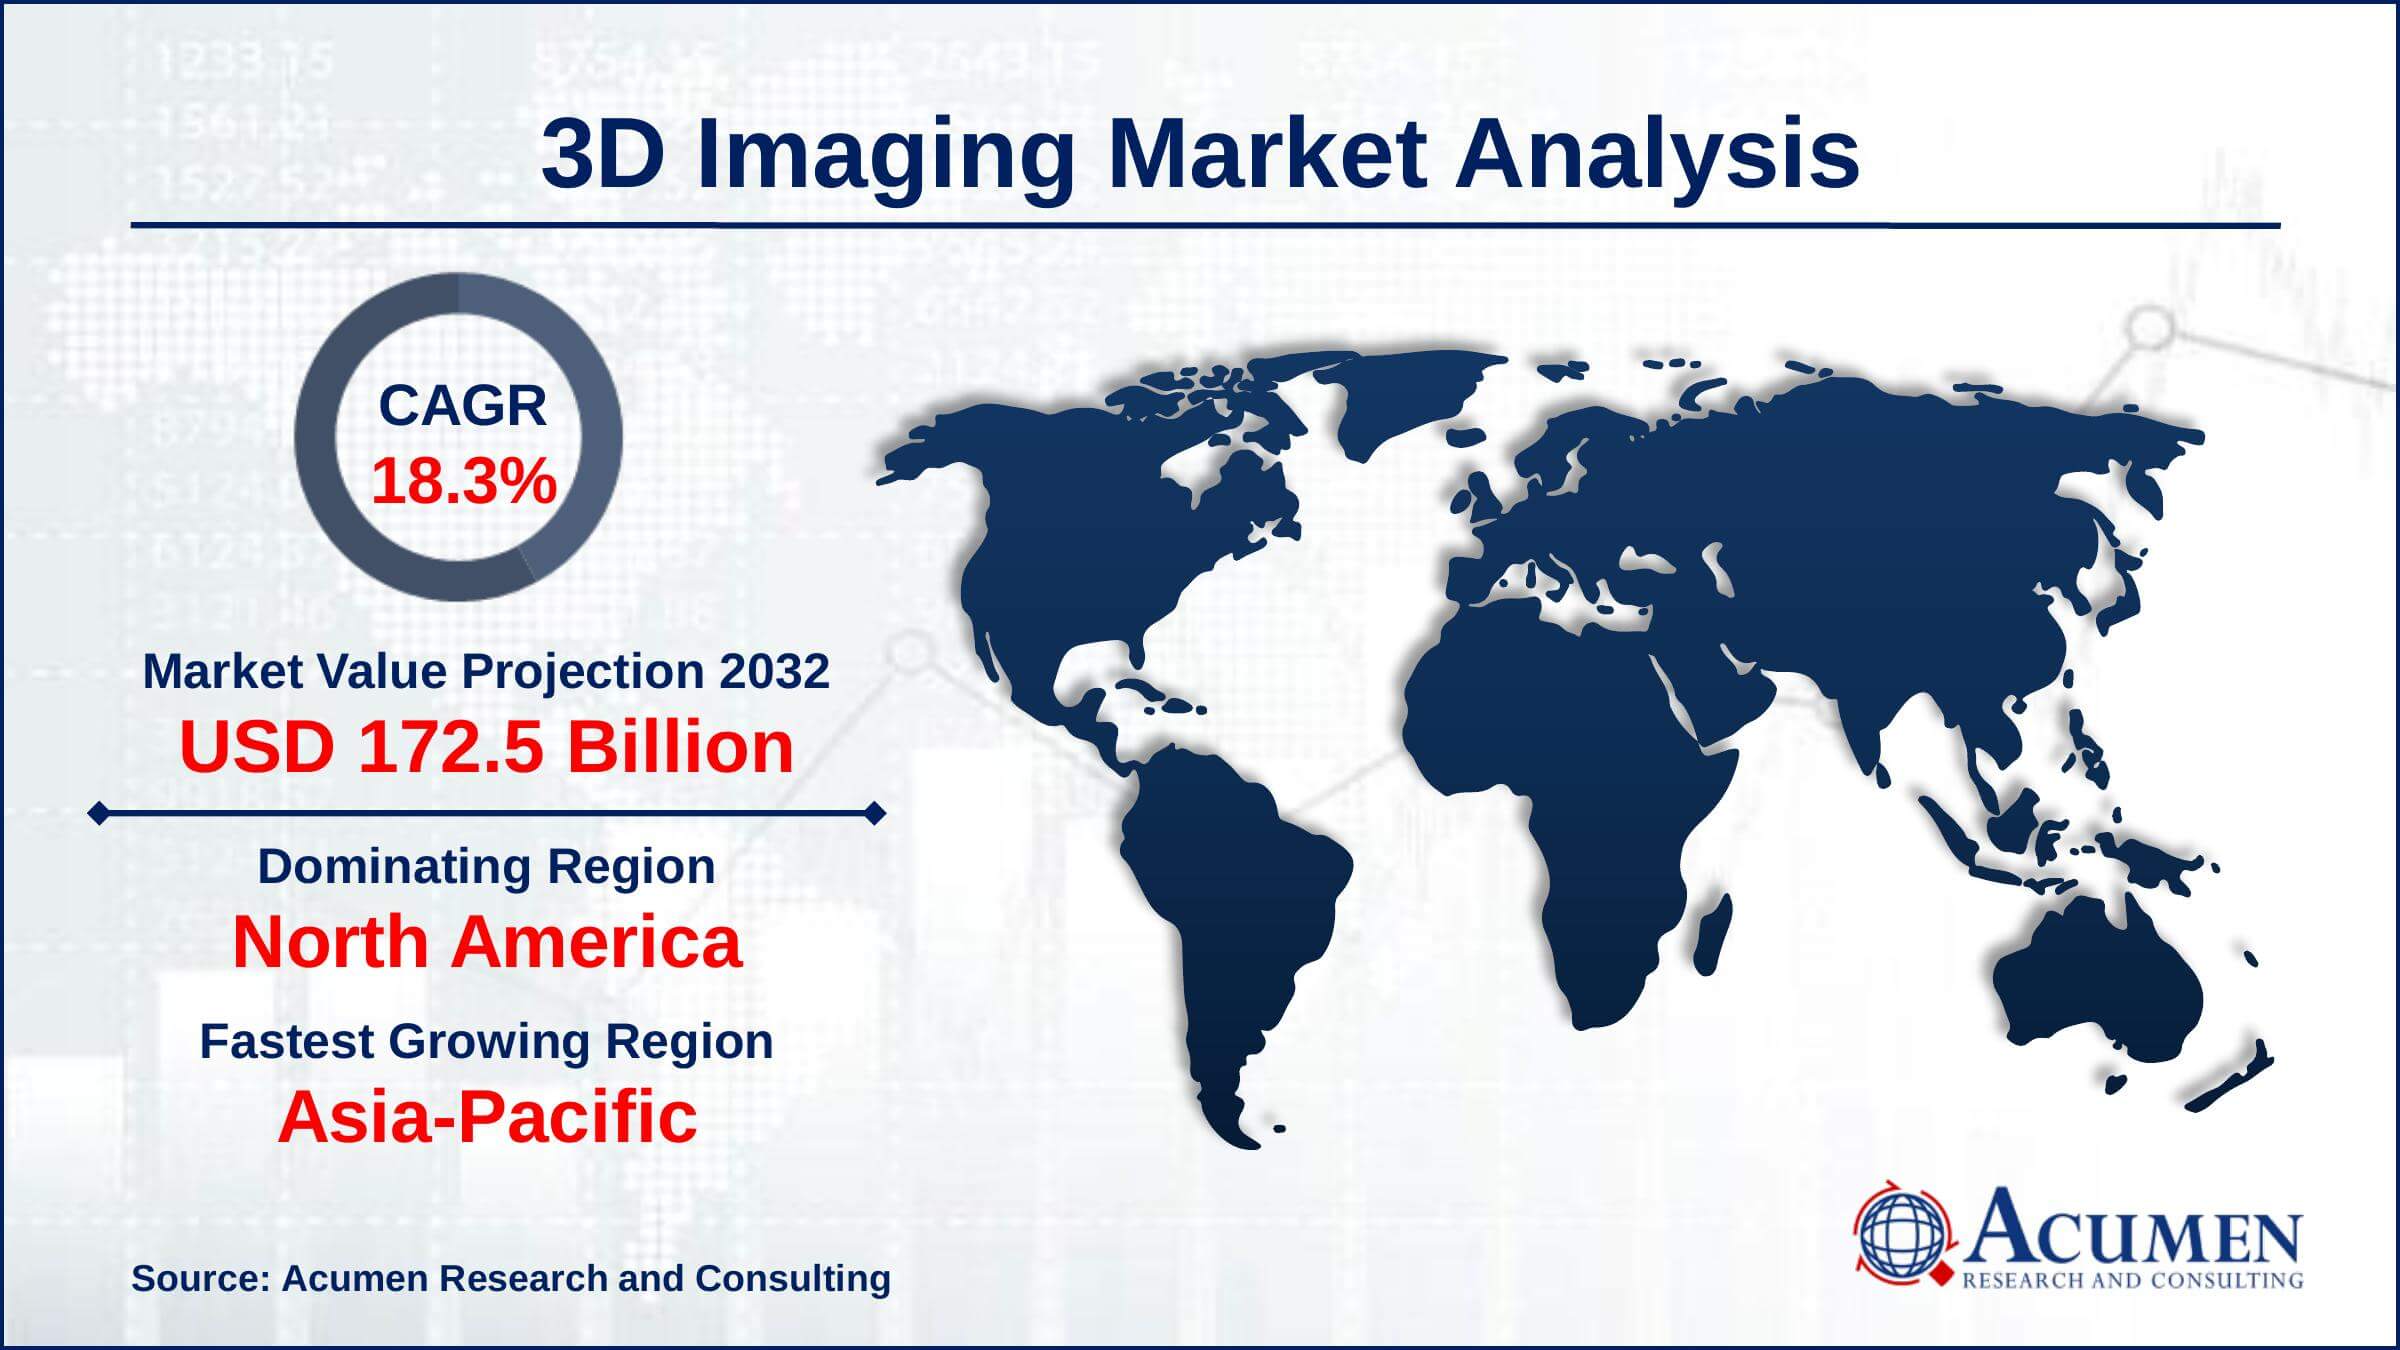 Global 3D Imaging Market Trends